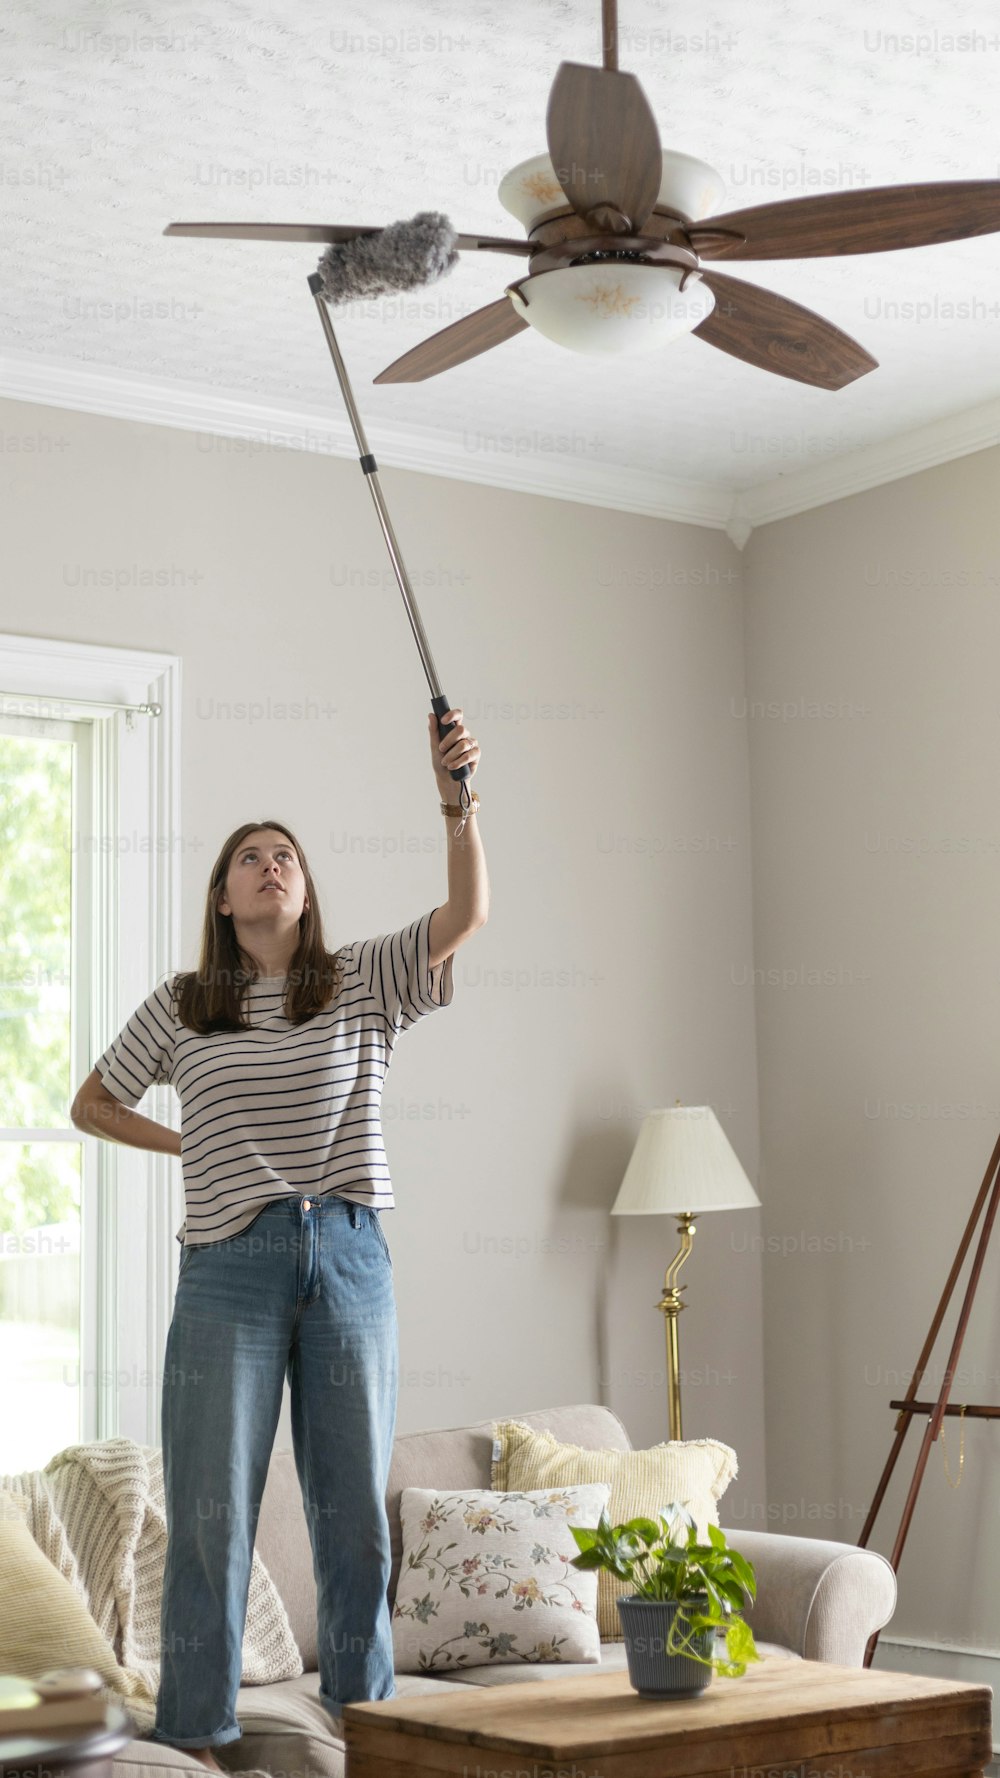 Una mujer parada en una sala de estar sosteniendo un ventilador de techo